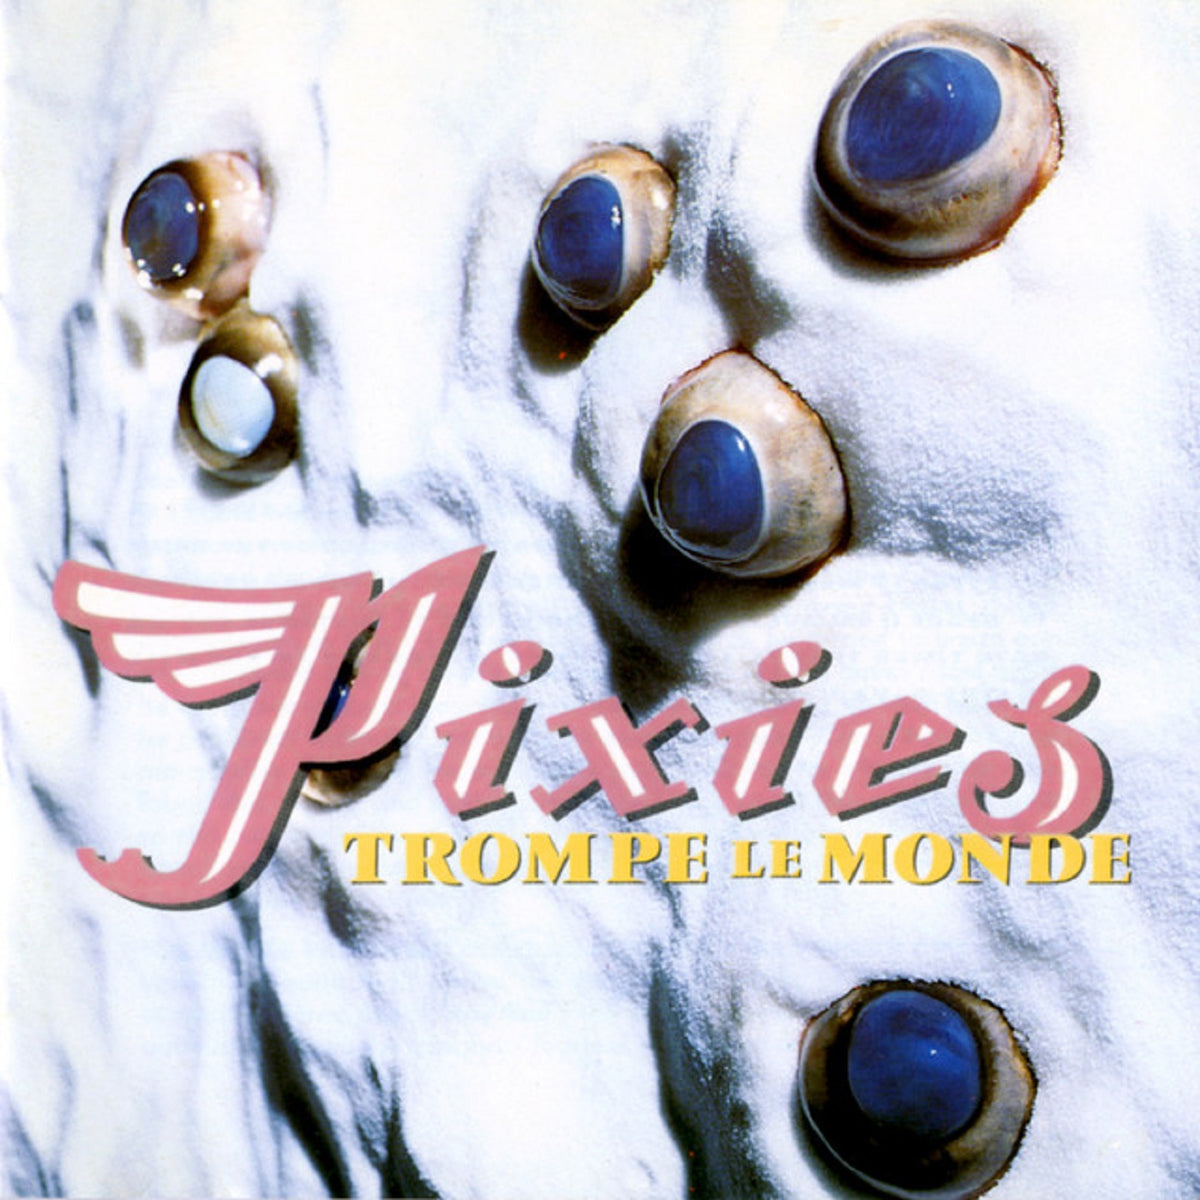 Pixies - Trompe Le Monde - BROKEN 8 RECORDS